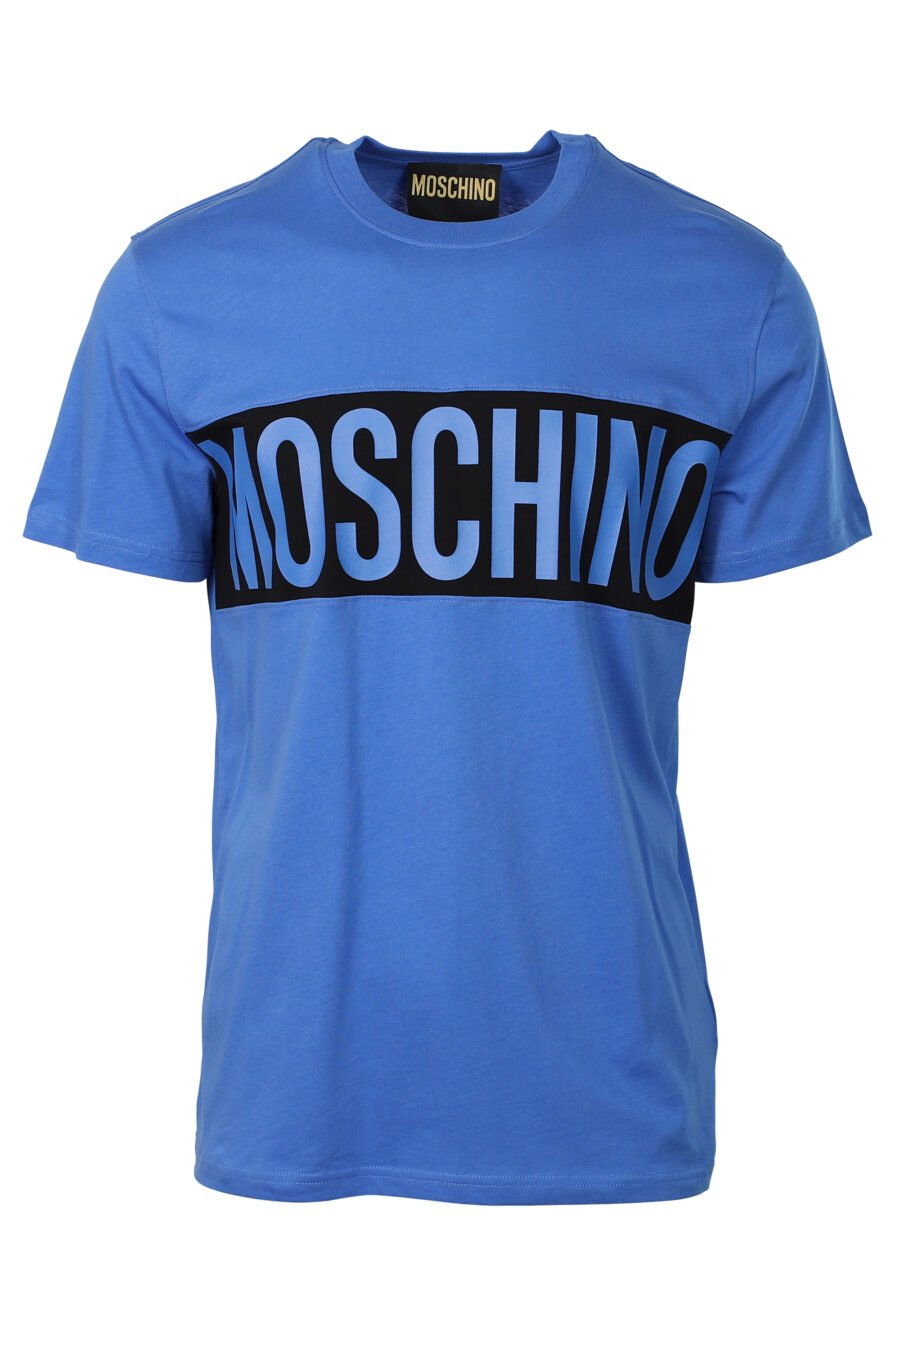 T-shirt azul com logótipo de riscas pretas - 667112834116